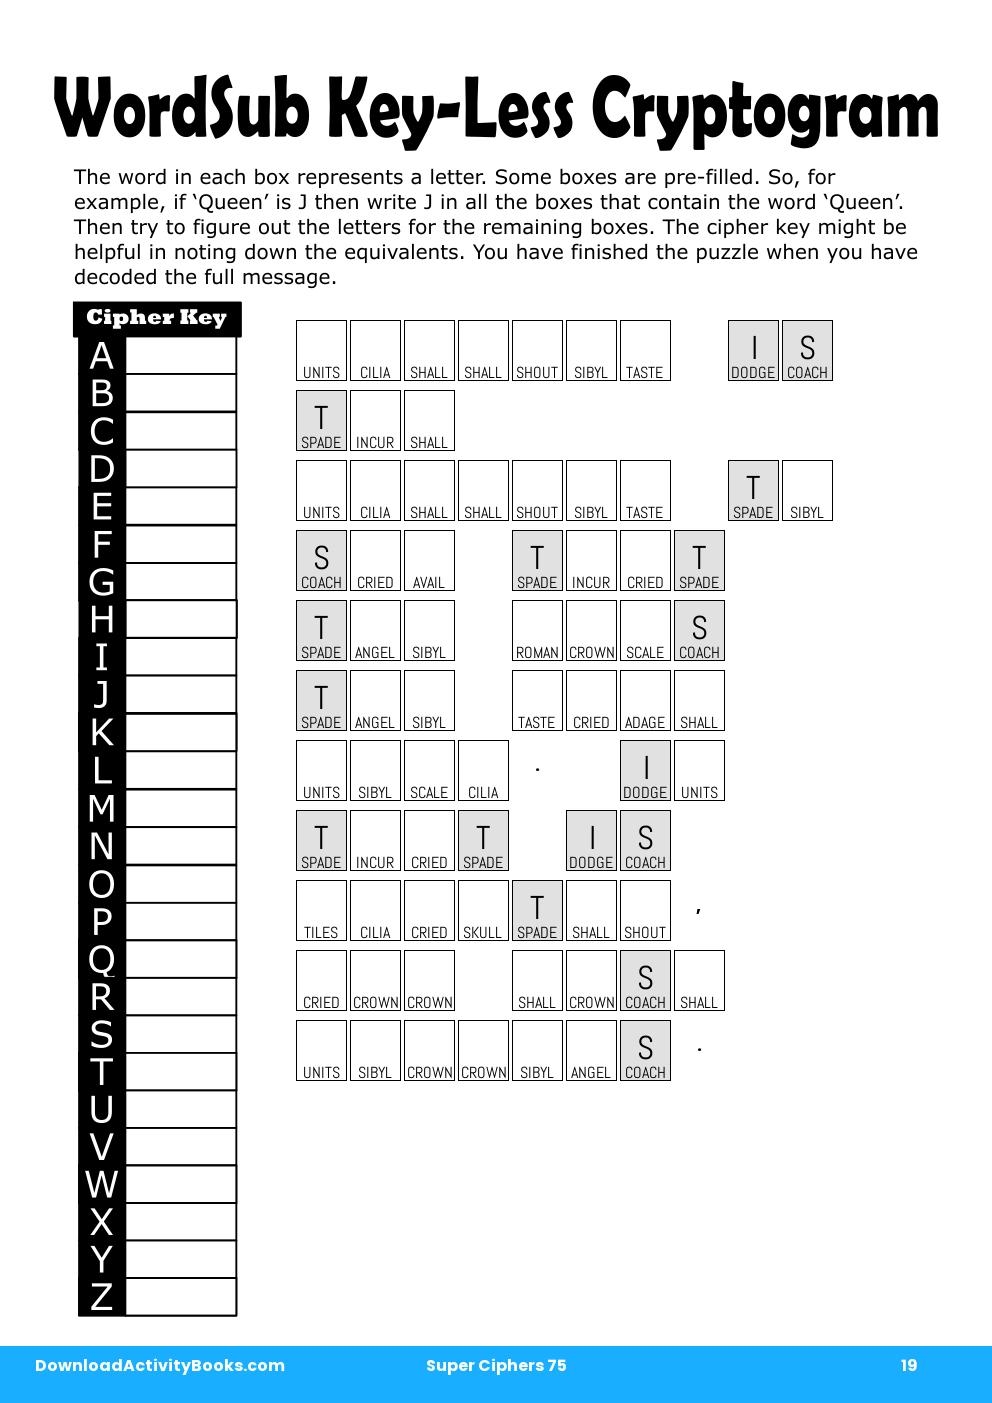 Dodges Crossword Clue